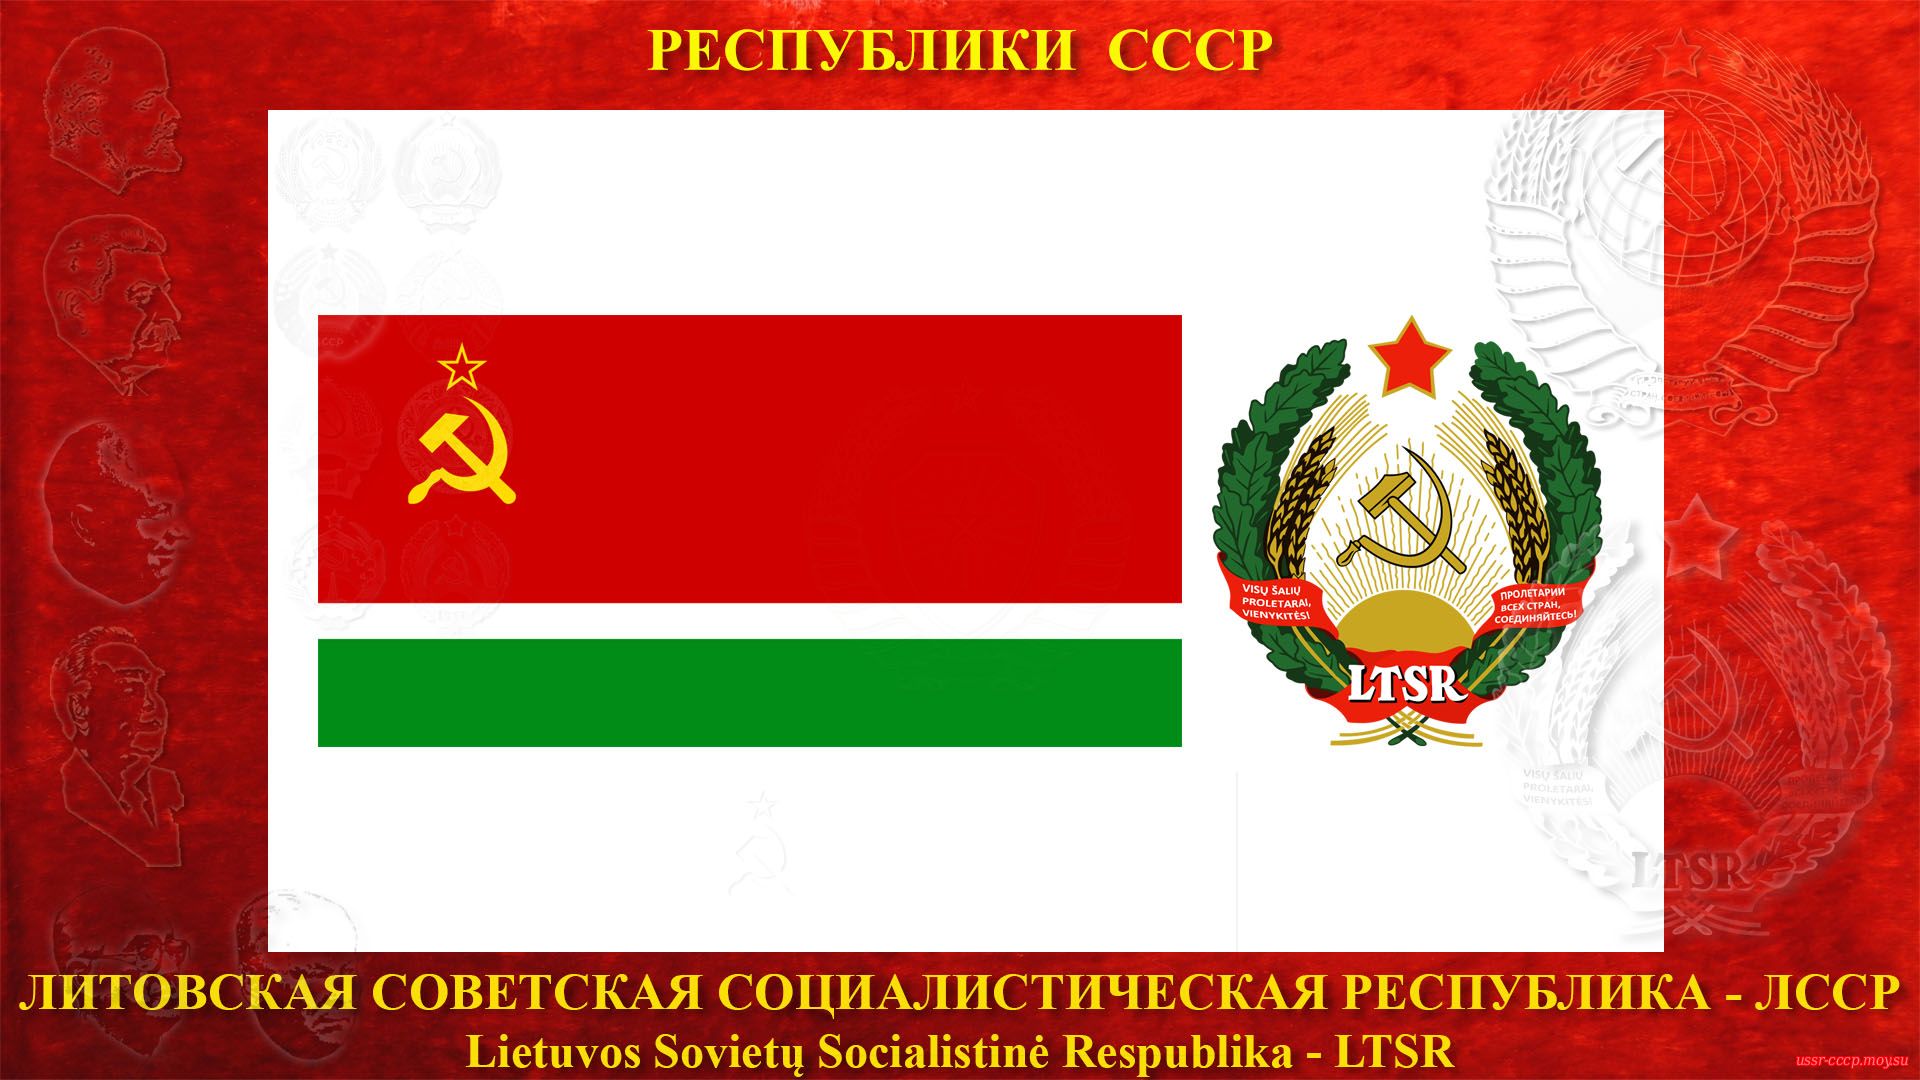 ЛССР — Литовская Советская Социалистическая Республика (03.08.1940 — де-юре)